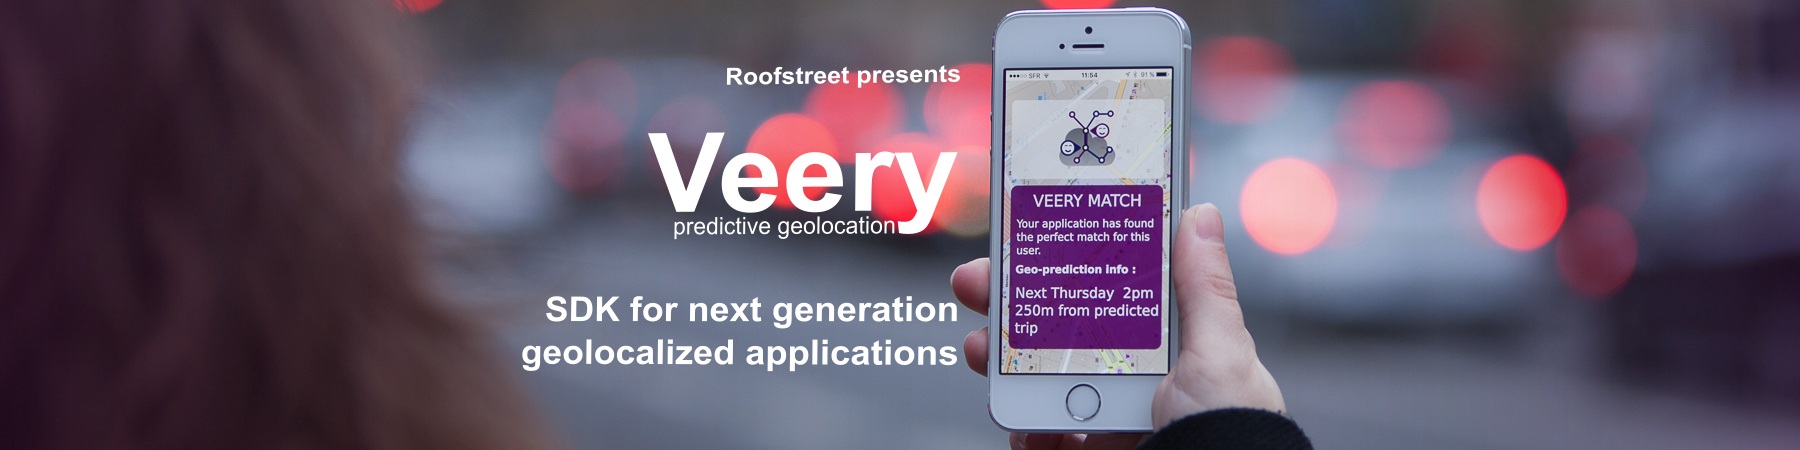 veery Software Development Kit géolocalisation prédictive